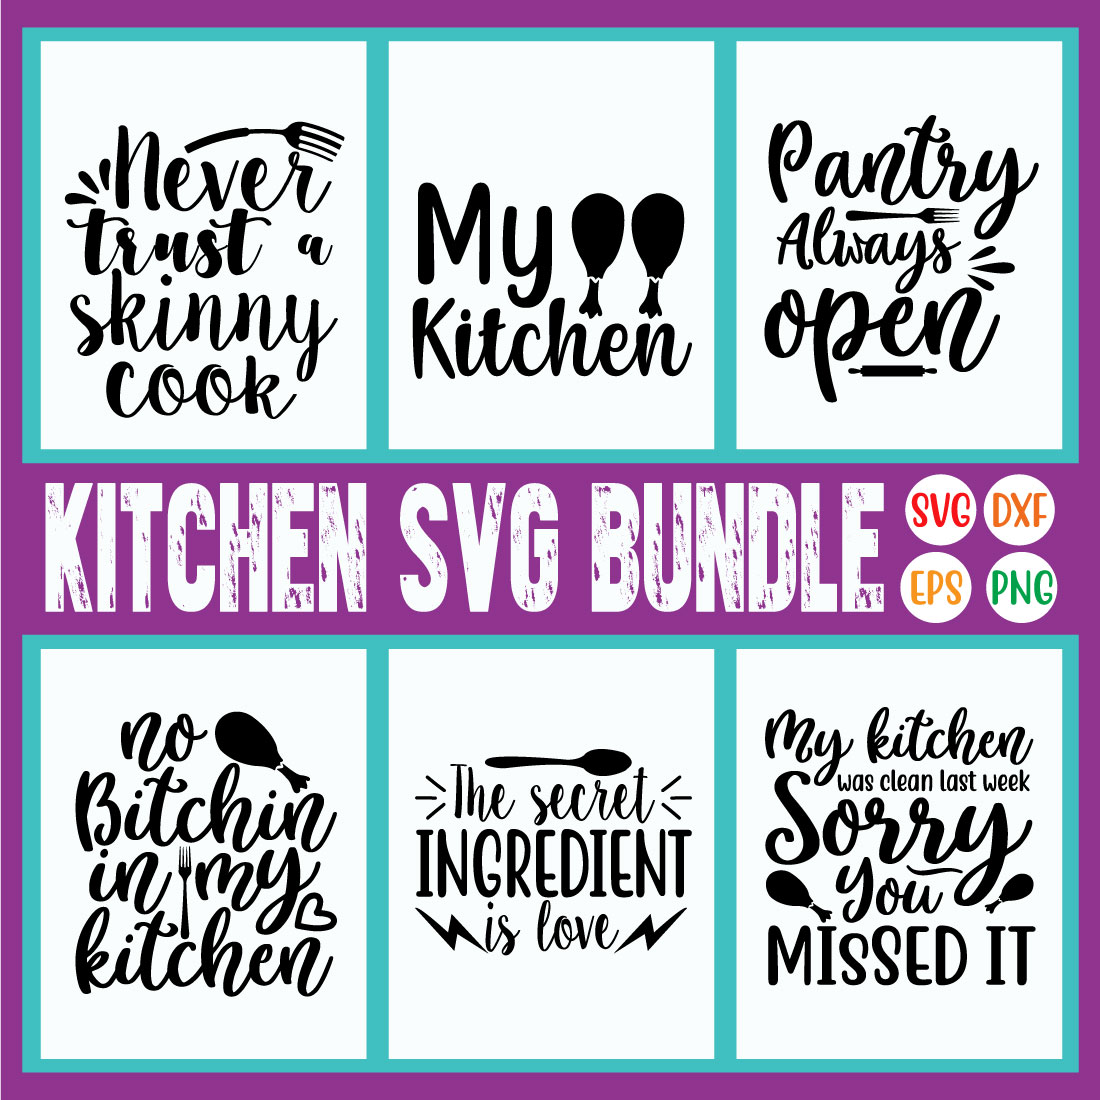 Kitchen Svg Design Bundle Vol1 cover image.